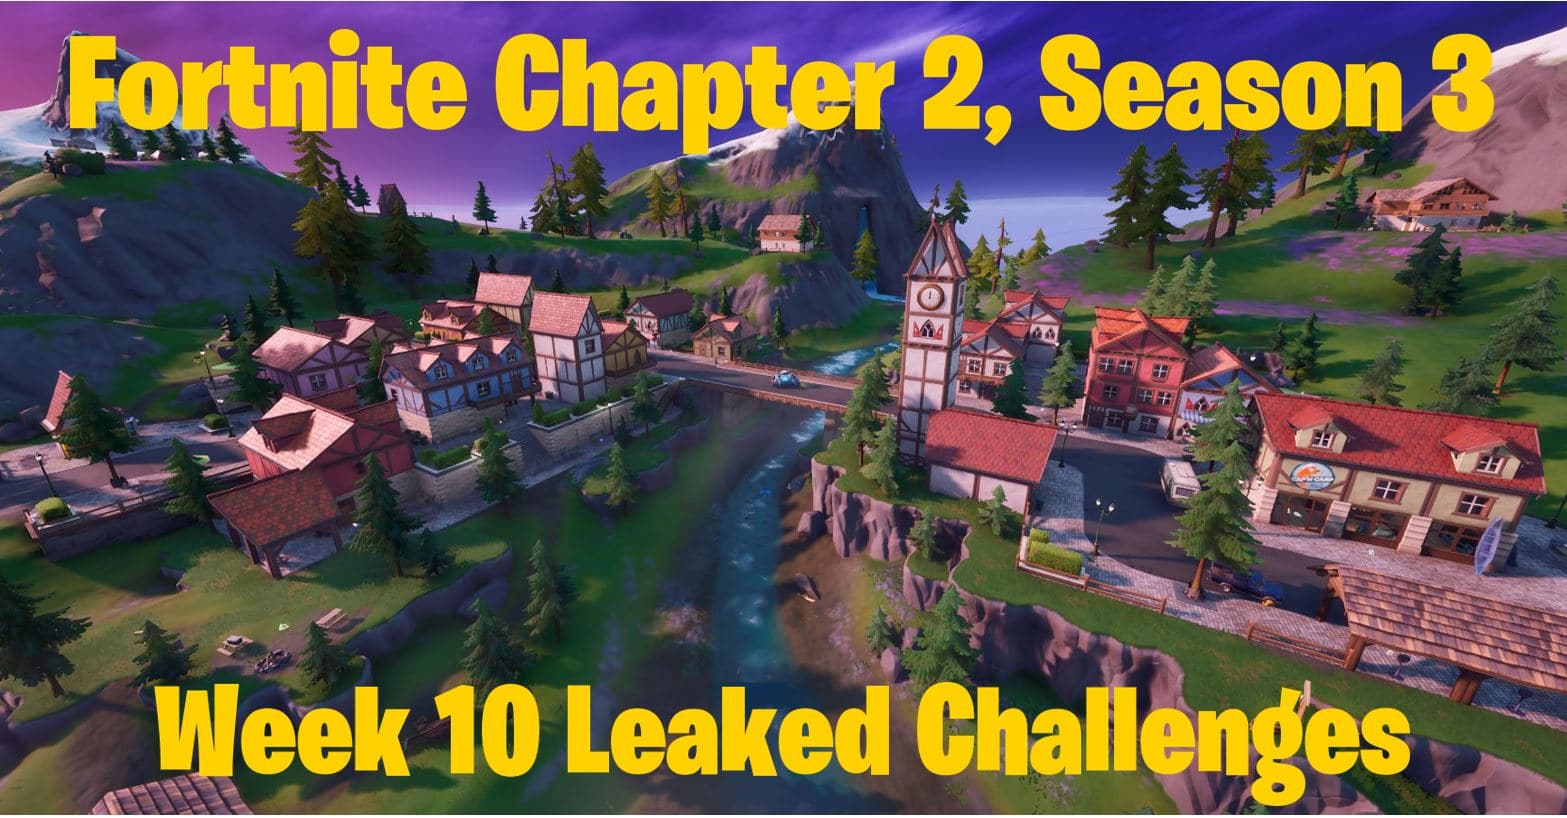 Fortnite Chapter 2, Season 3 Week 10 Leaked Challenges